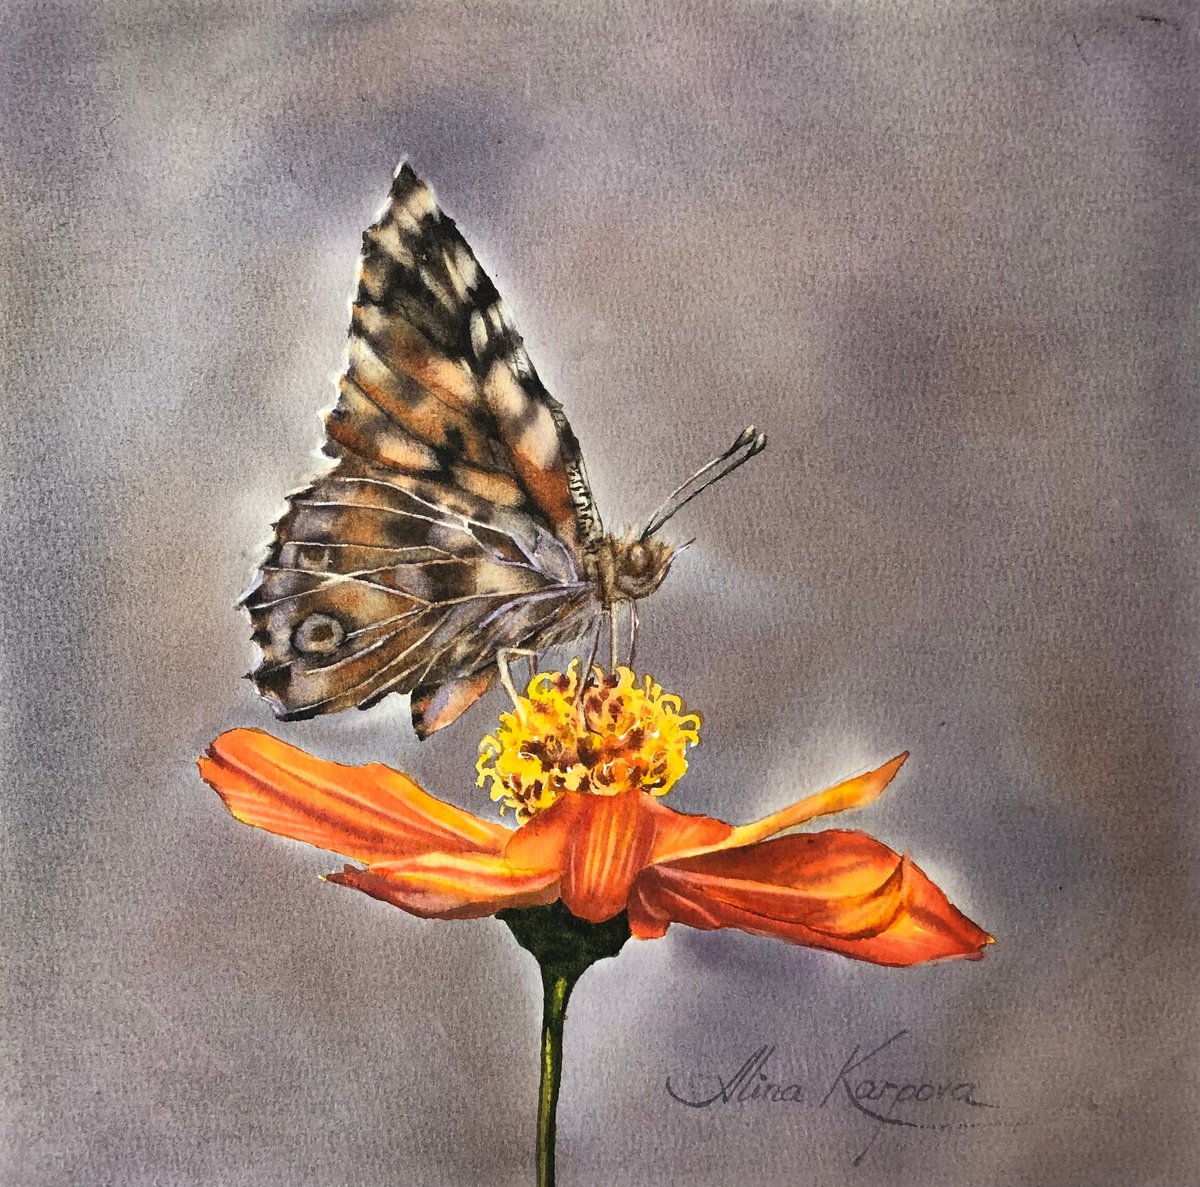 Butterfly on flower by Alina Karpova